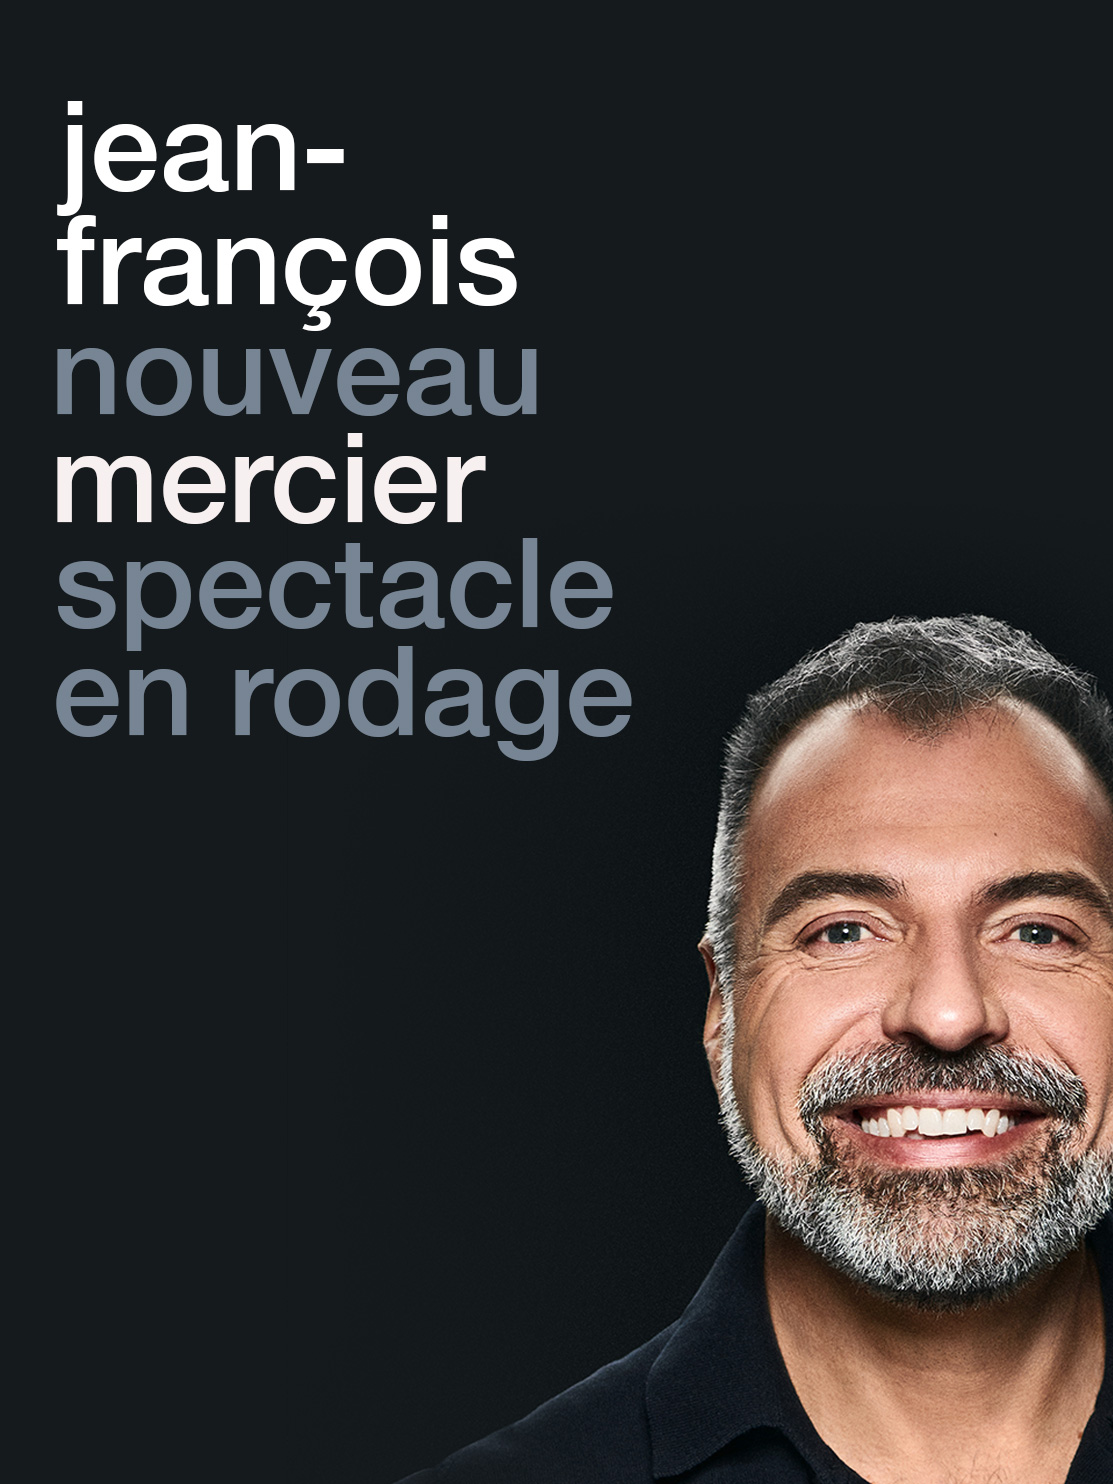 Jean-François Mercier - Nouveau spectacle